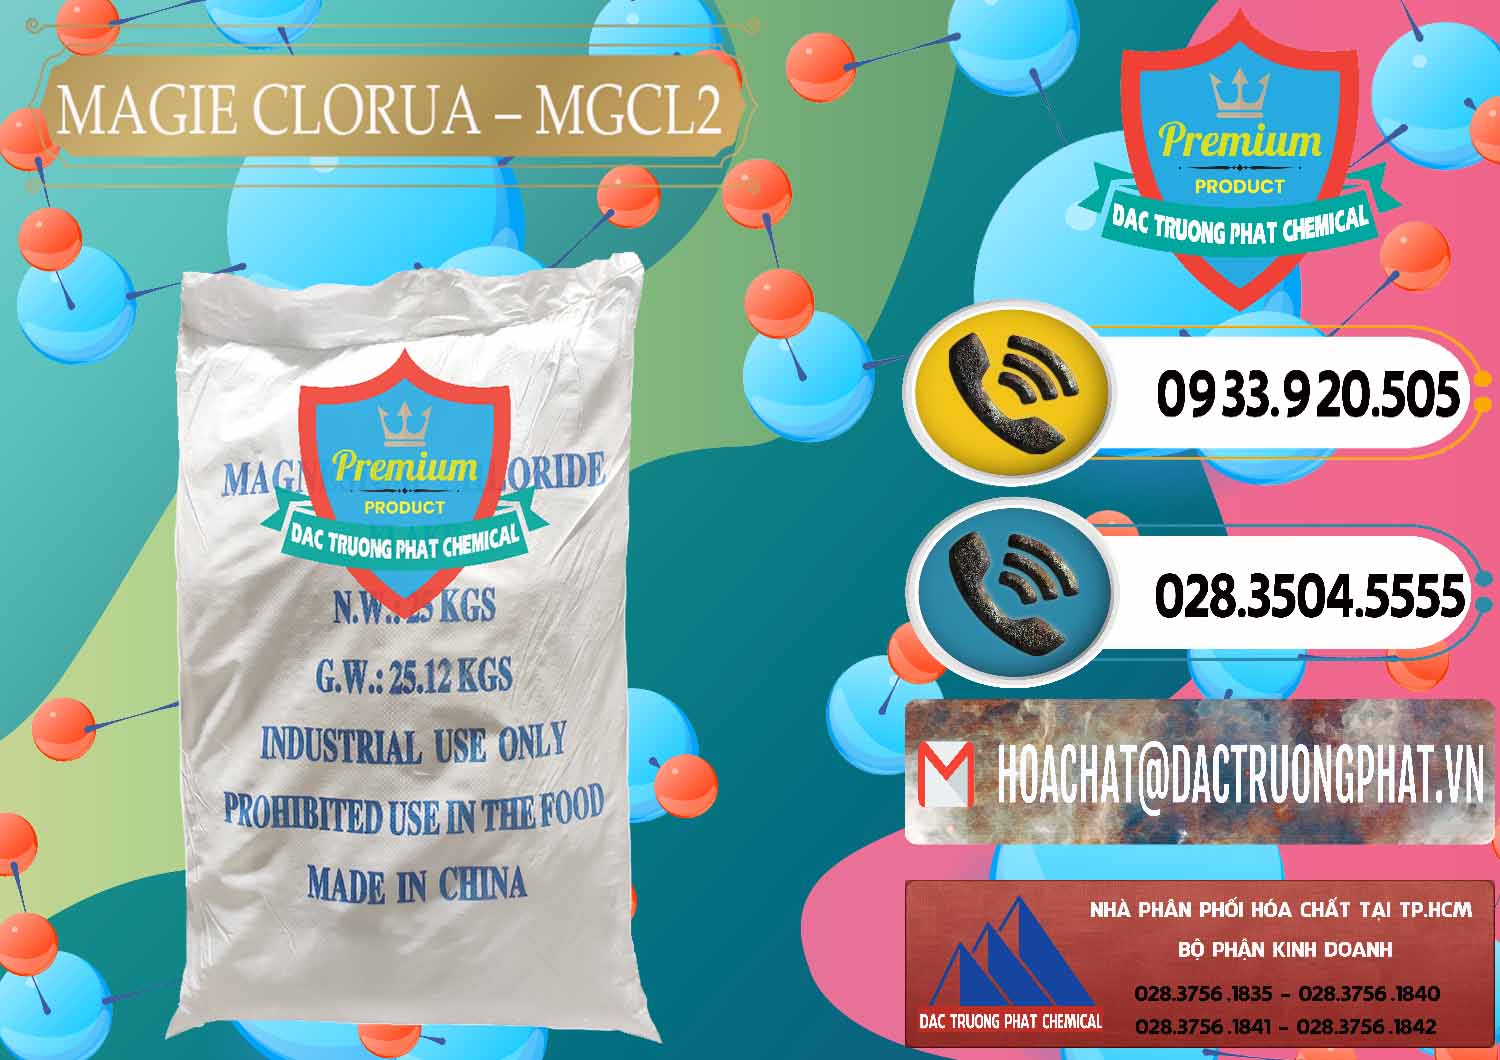 Nơi chuyên bán ( cung ứng ) Magie Clorua – MGCL2 96% Dạng Vảy Trung Quốc China - 0091 - Nơi nhập khẩu _ cung cấp hóa chất tại TP.HCM - hoachatdetnhuom.vn